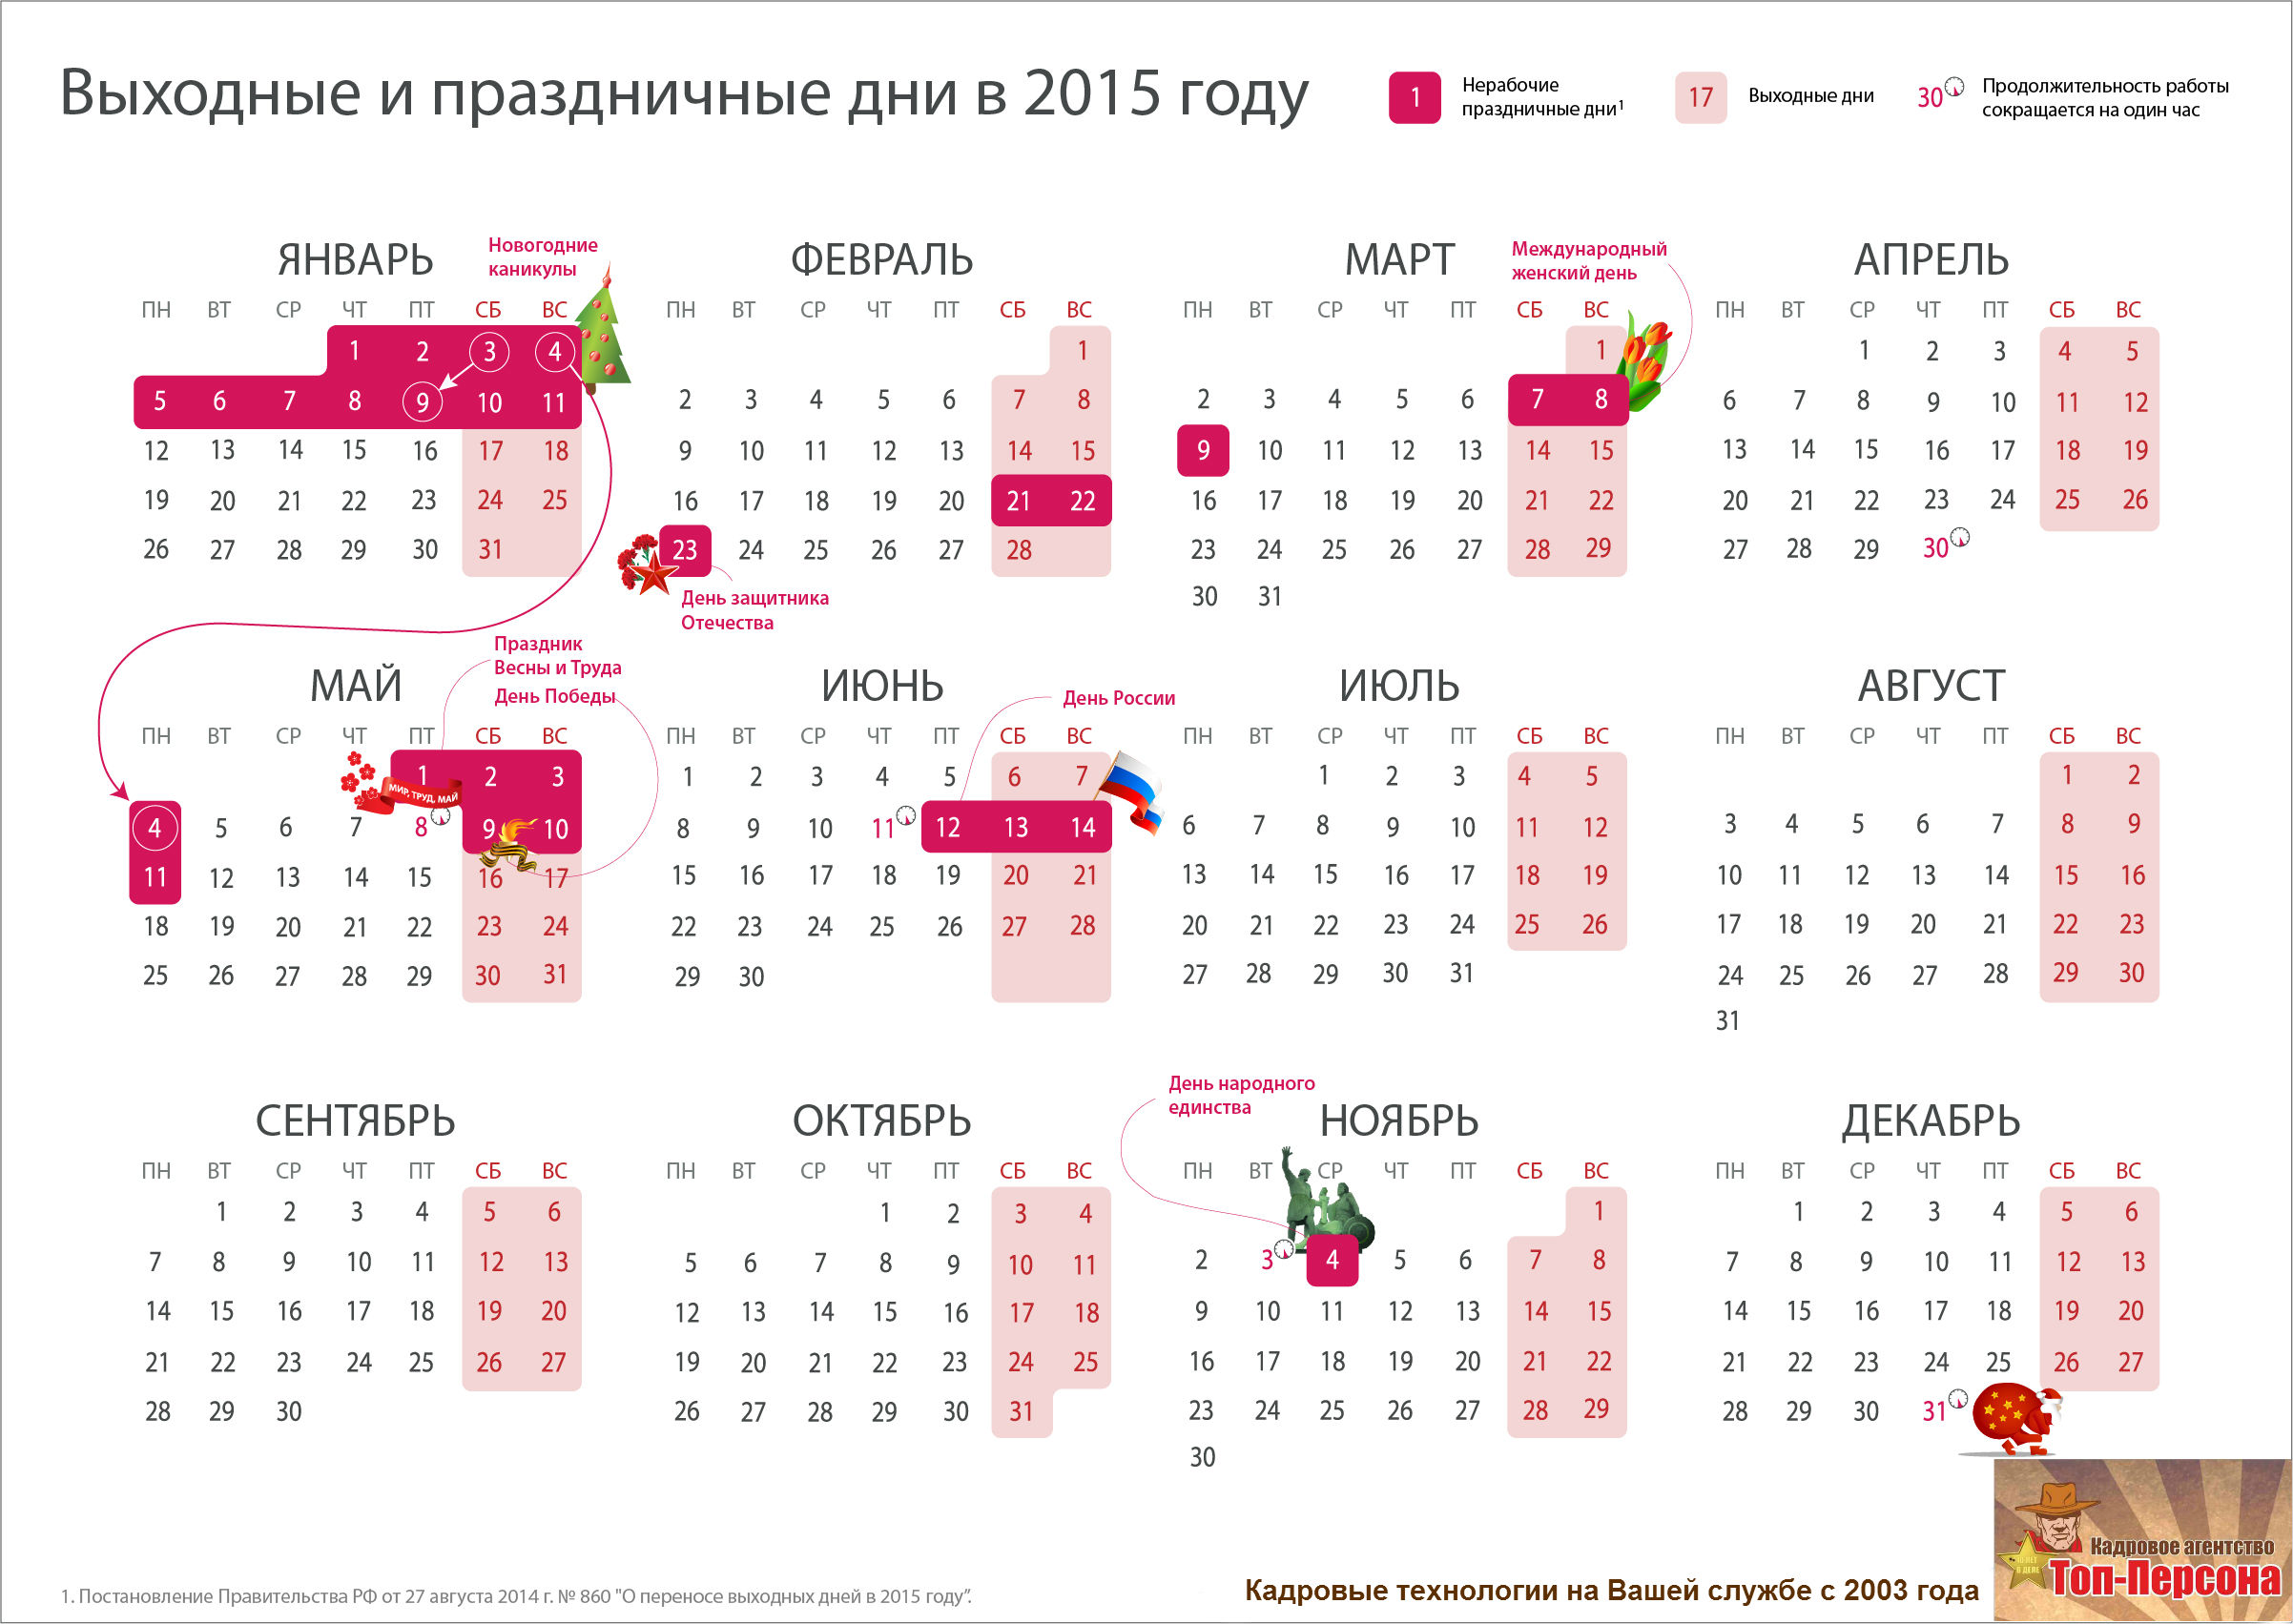 Производственный календарь 2015 года